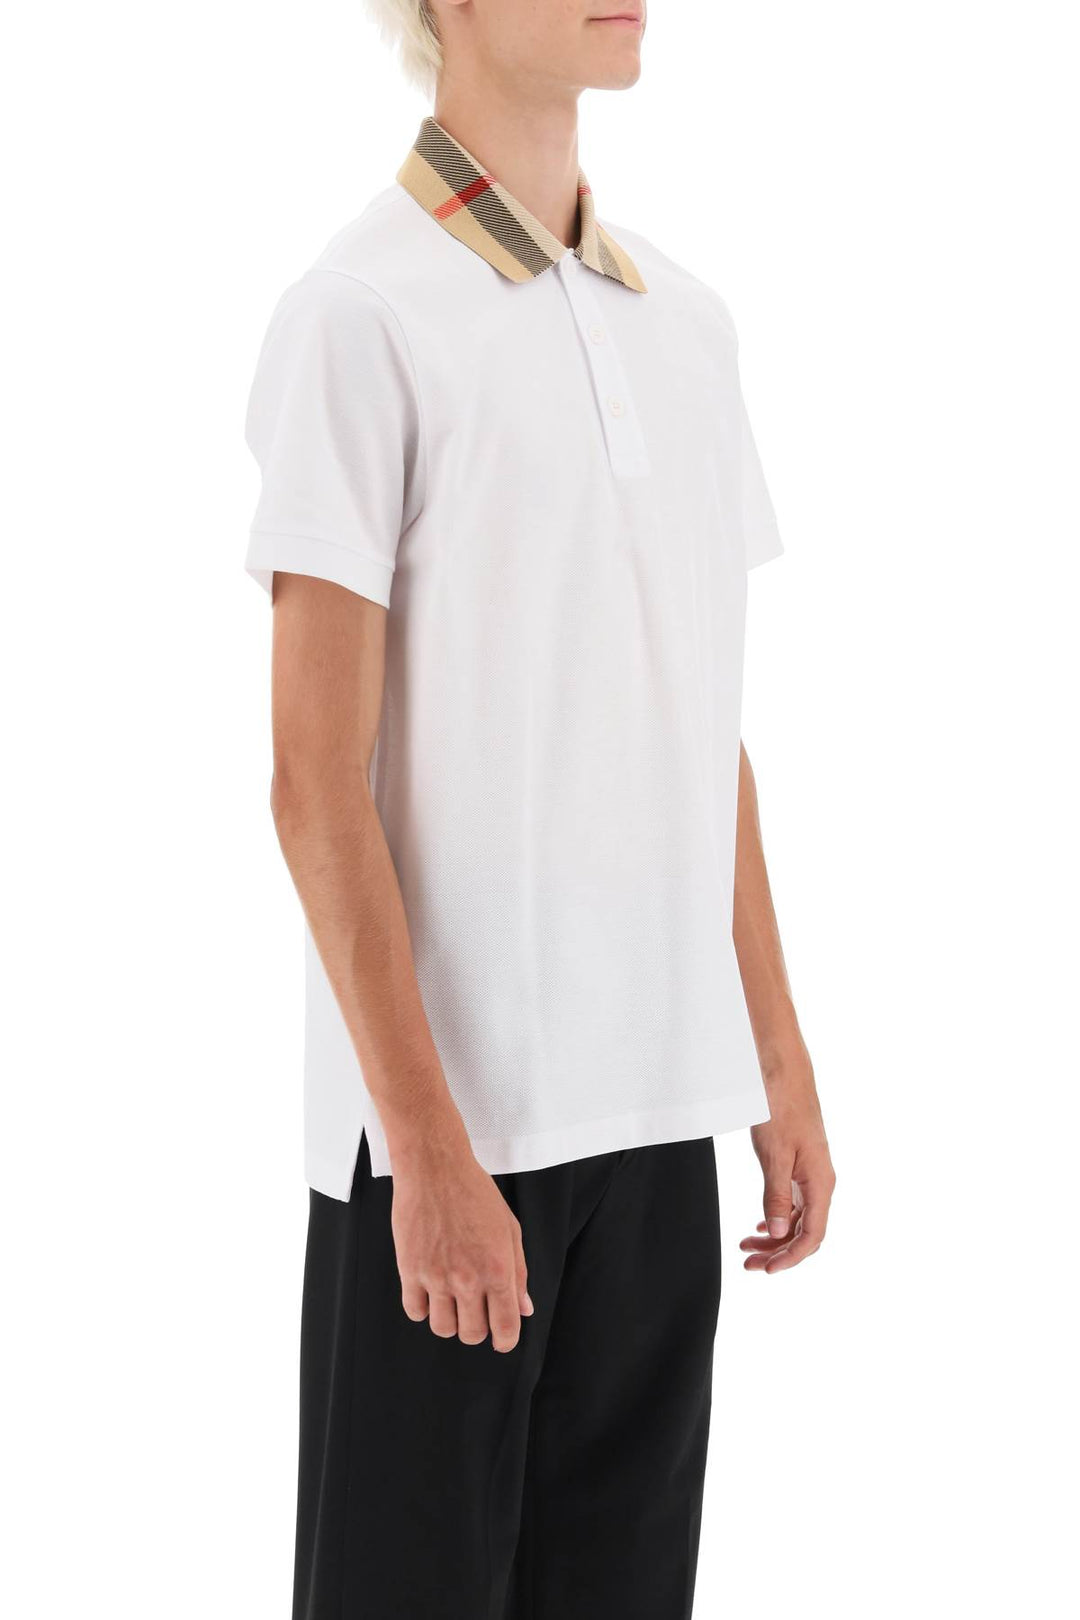 Burberry Check Collar Cody Polo Shirt   White